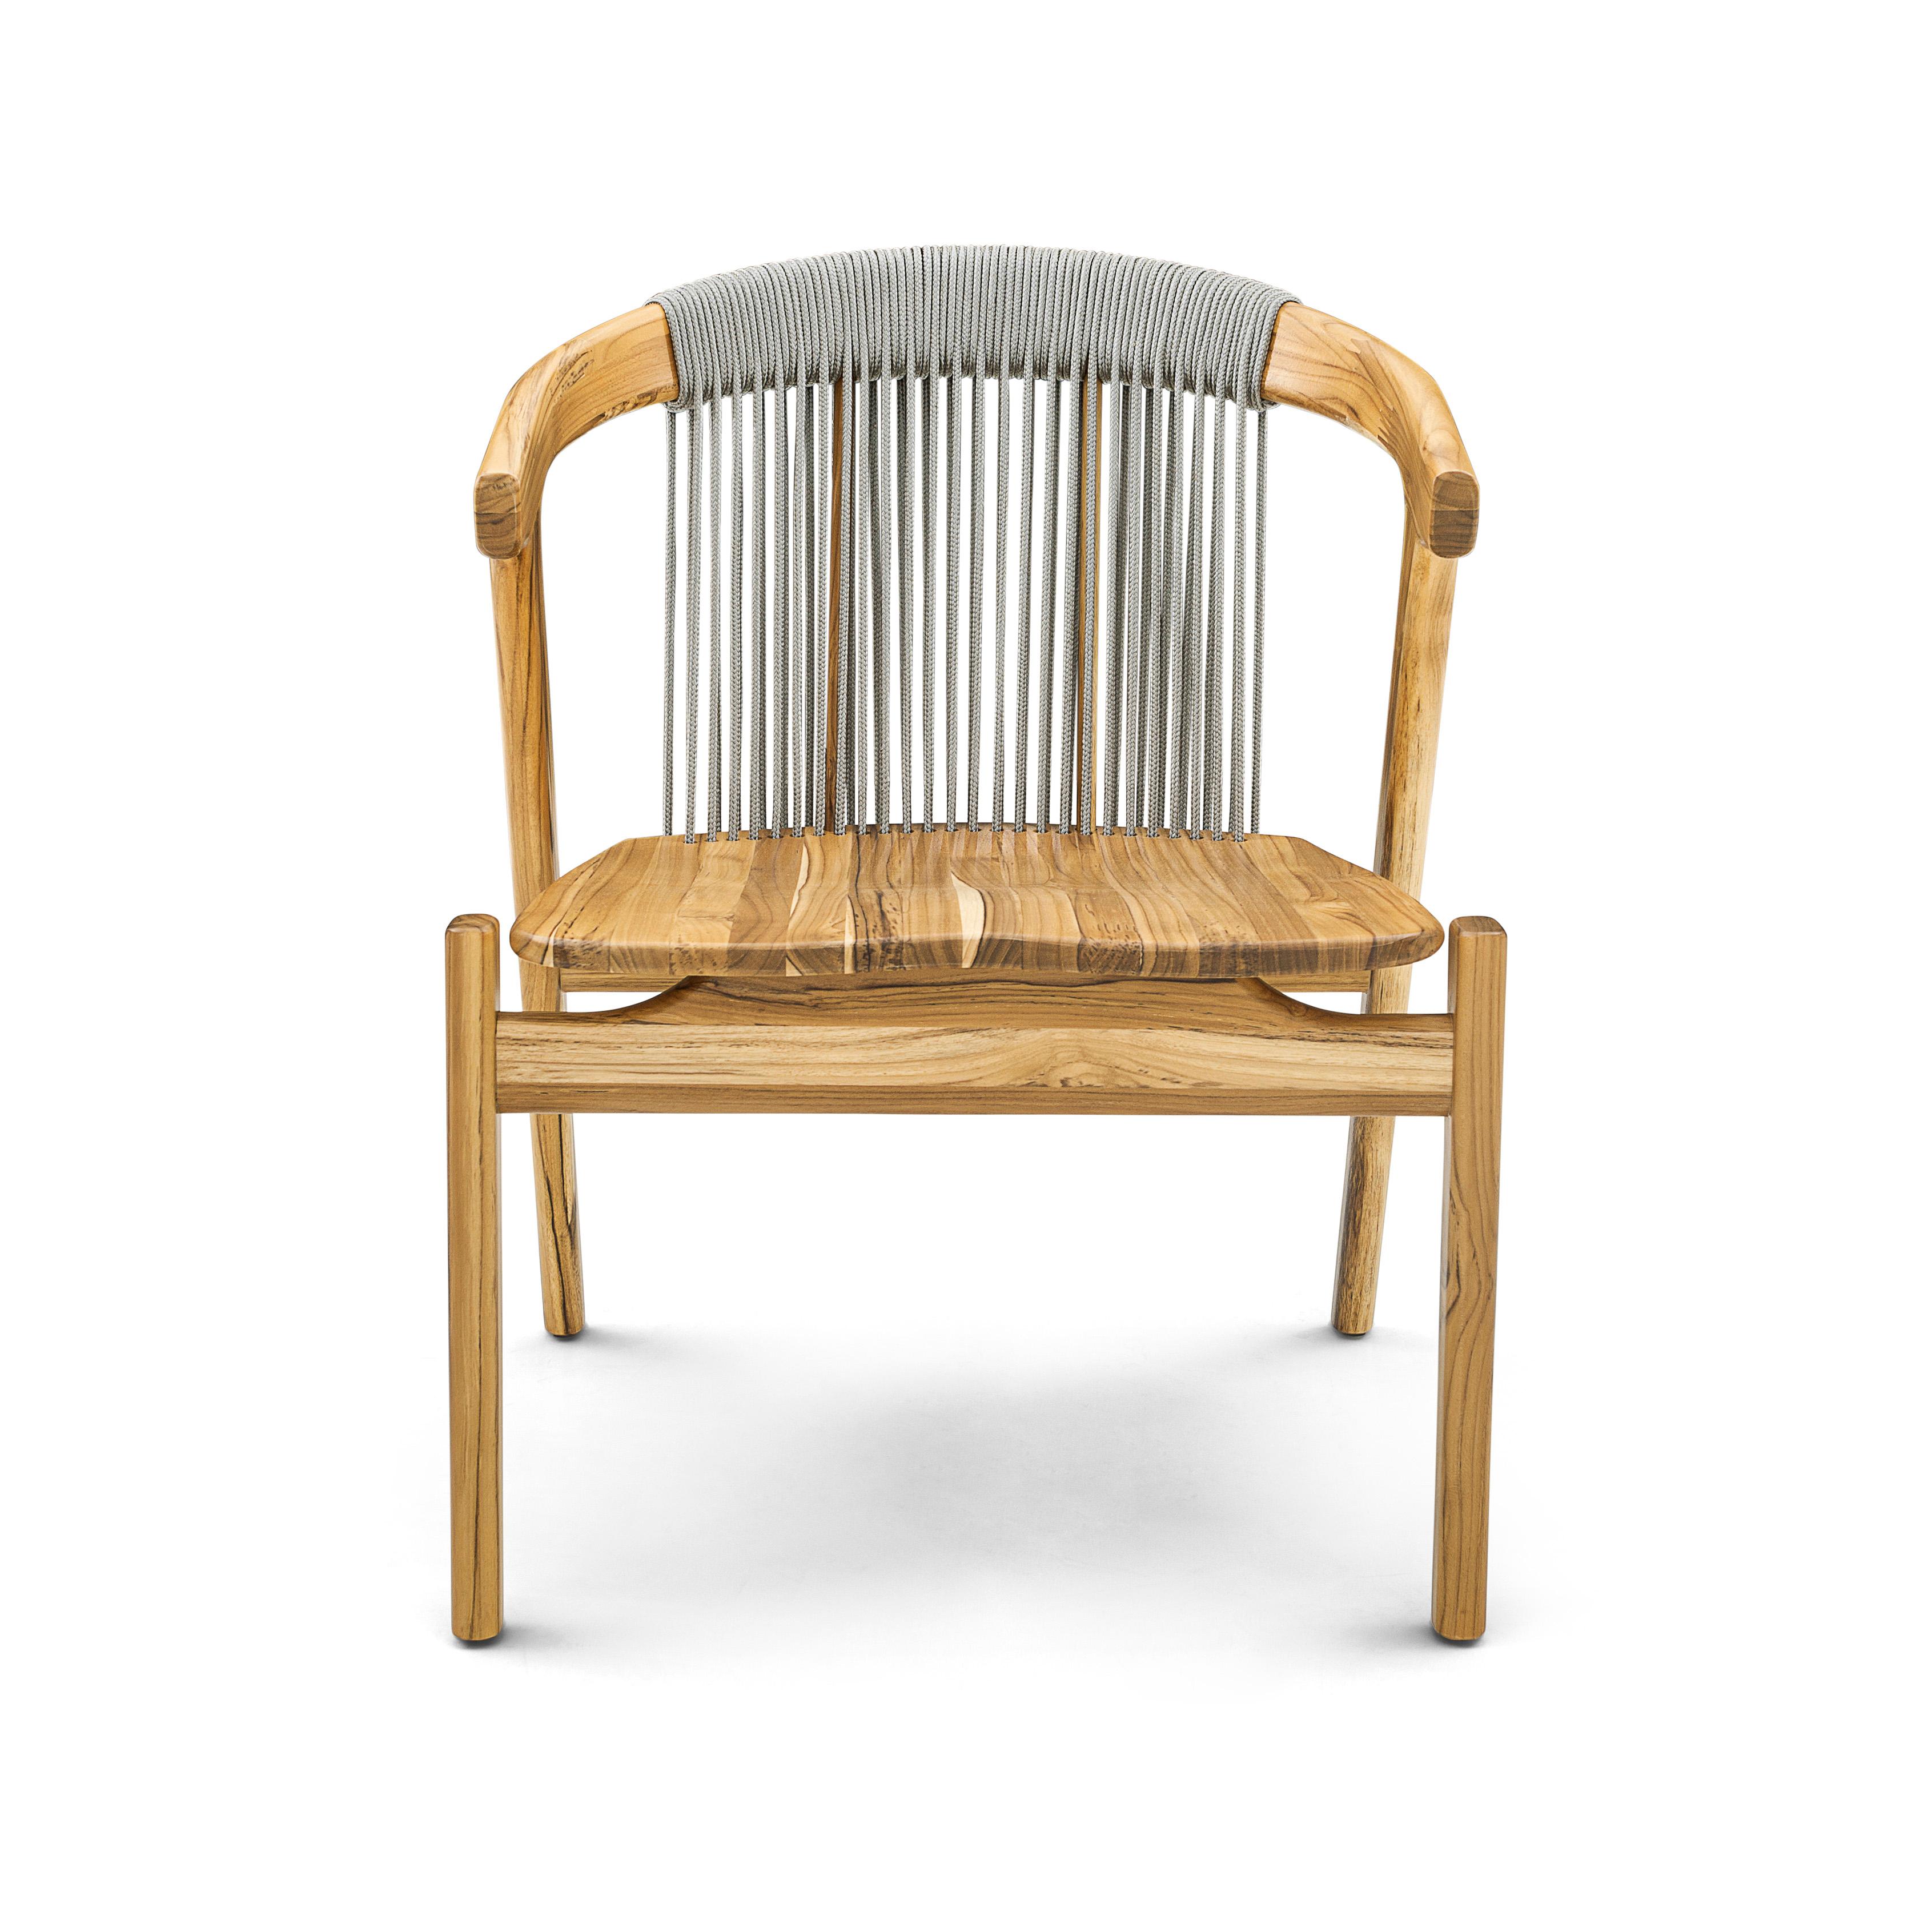 Der Vine Sessel wurde von unserem fantastischen Uultis Design Team für den Außenbereich entworfen. Er hat ein wunderschönes Teakholz-Finish für die Beine, den Rahmen und die Sitzfläche und eine geschwungene Rückenlehne mit silbernem Rankenwerk,